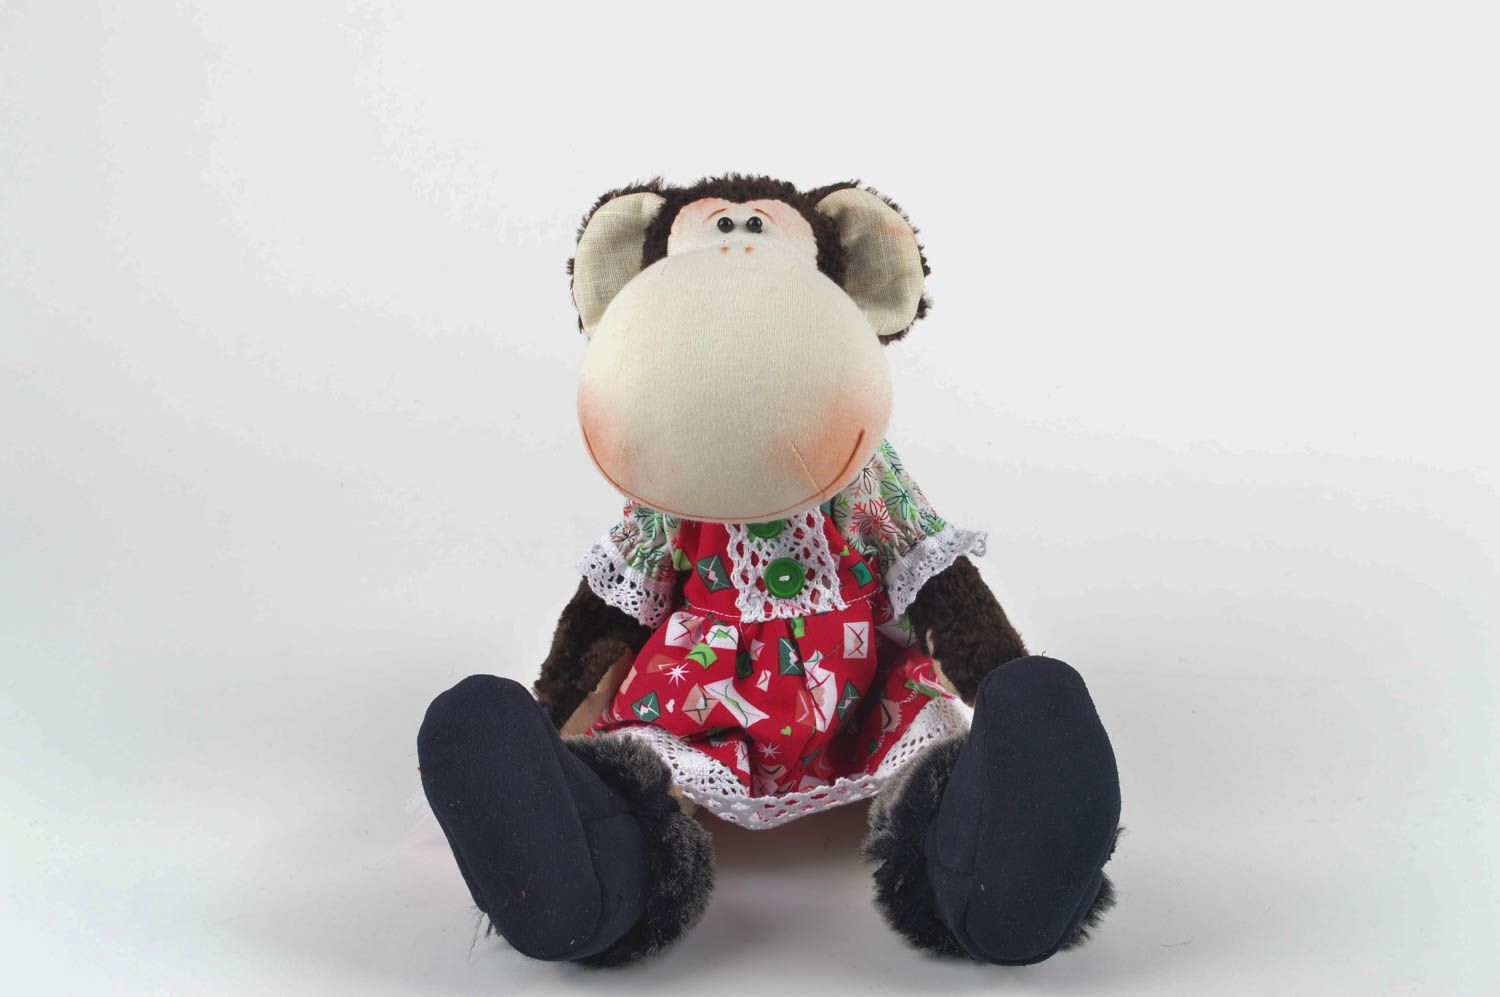 Игрушка обезьяна хэнд мэйд детская игрушка из льна мягкая игрушка авторская фото 5